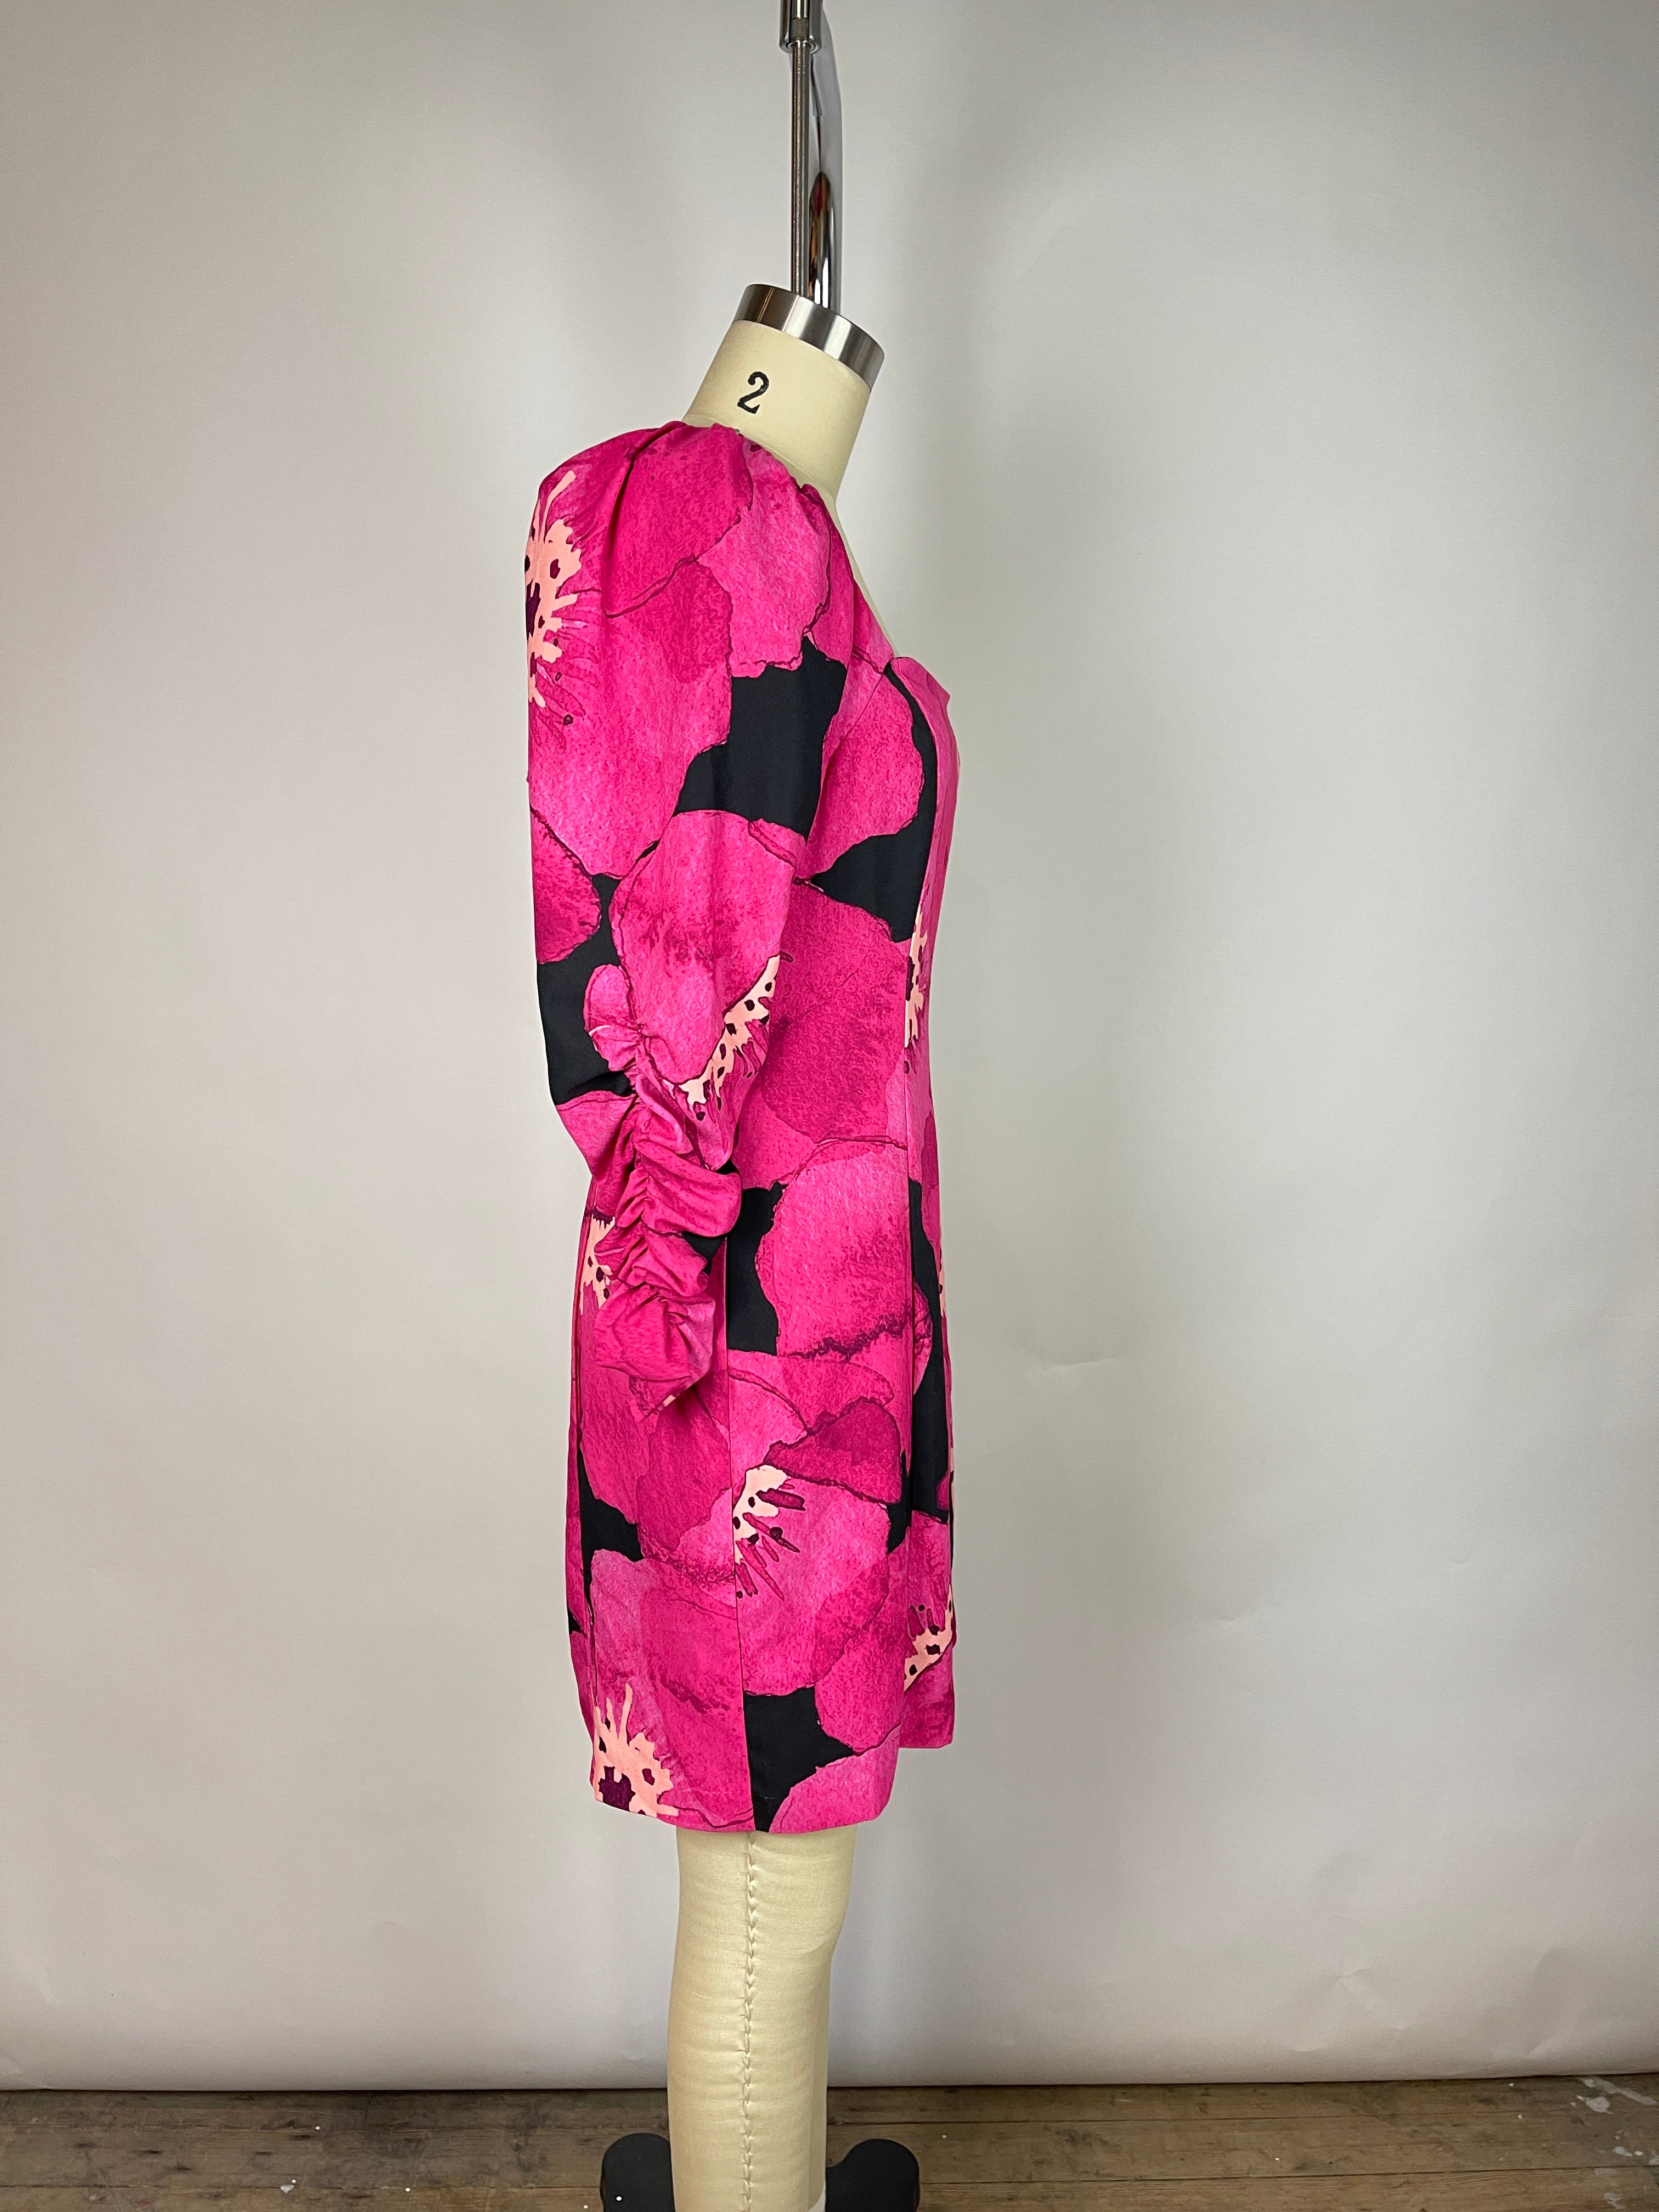 Hutch Pink Floral Dress (M/L)